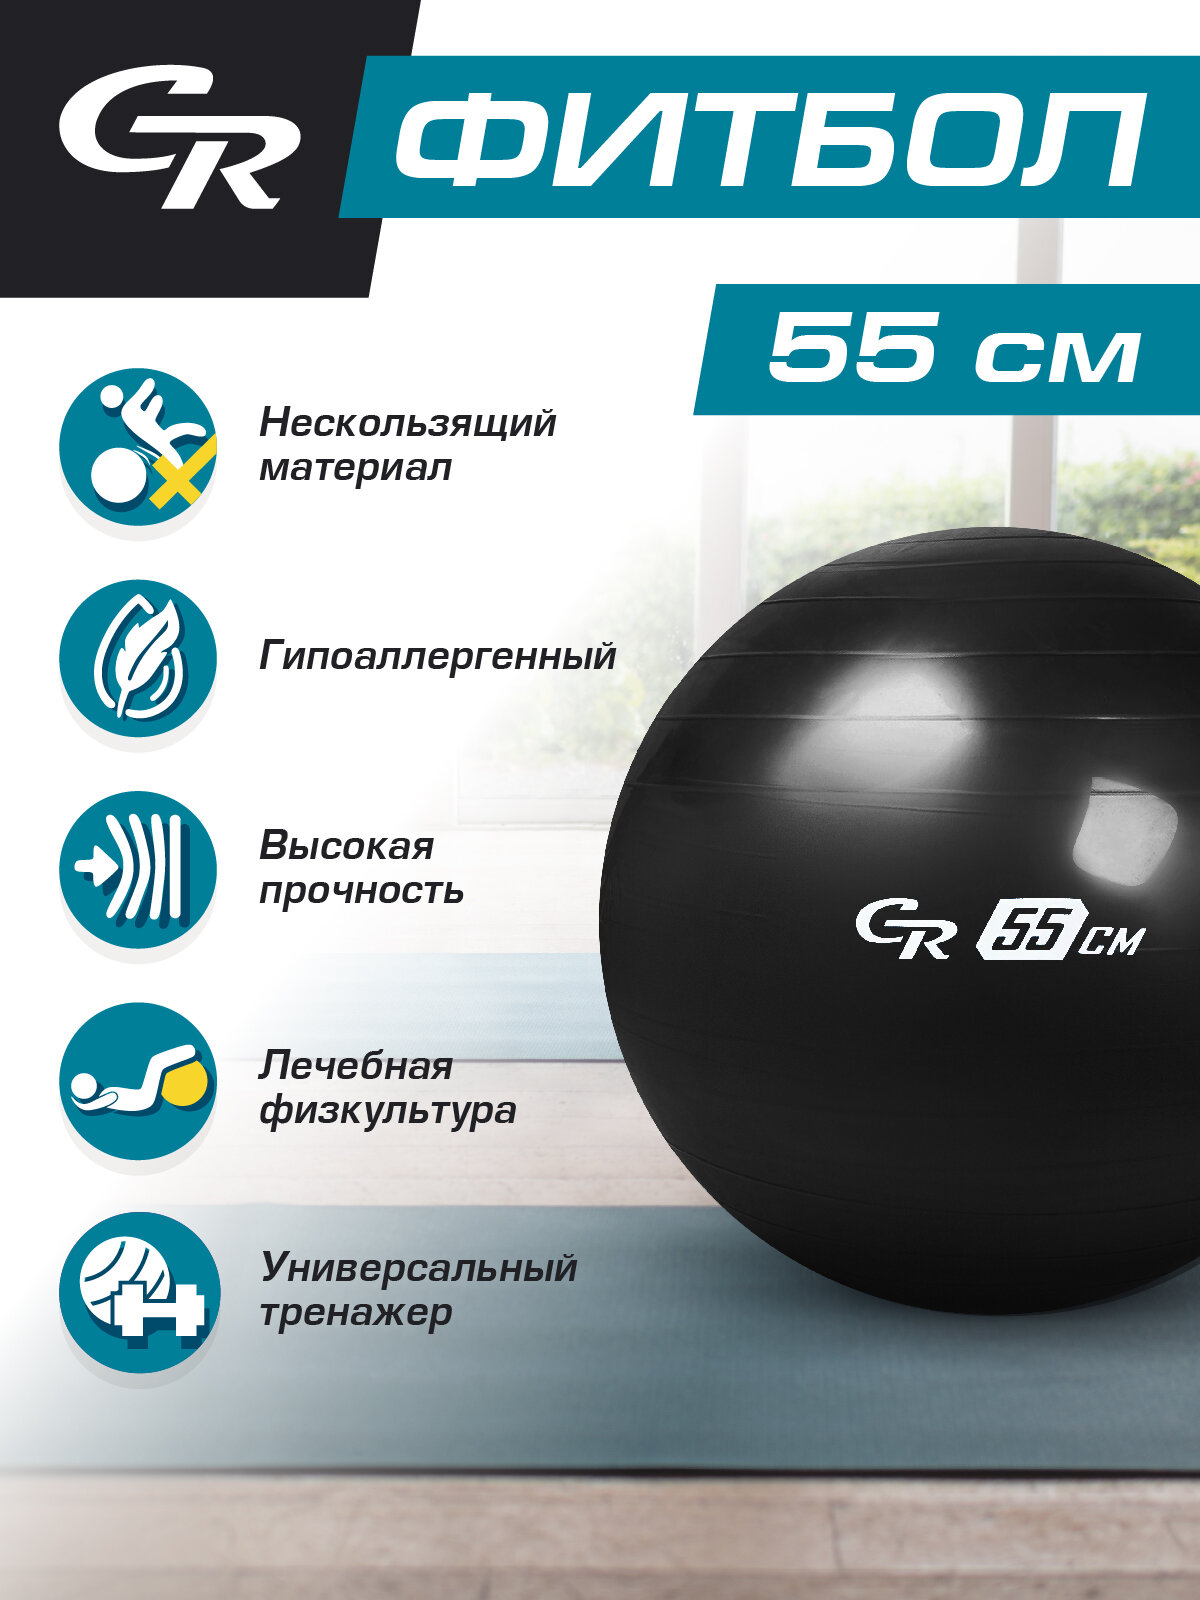 Мяч гимнастический, фитбол, для фитнеса, для занятий спортом, диаметр 55 см, ПВХ, черный, JB0211545